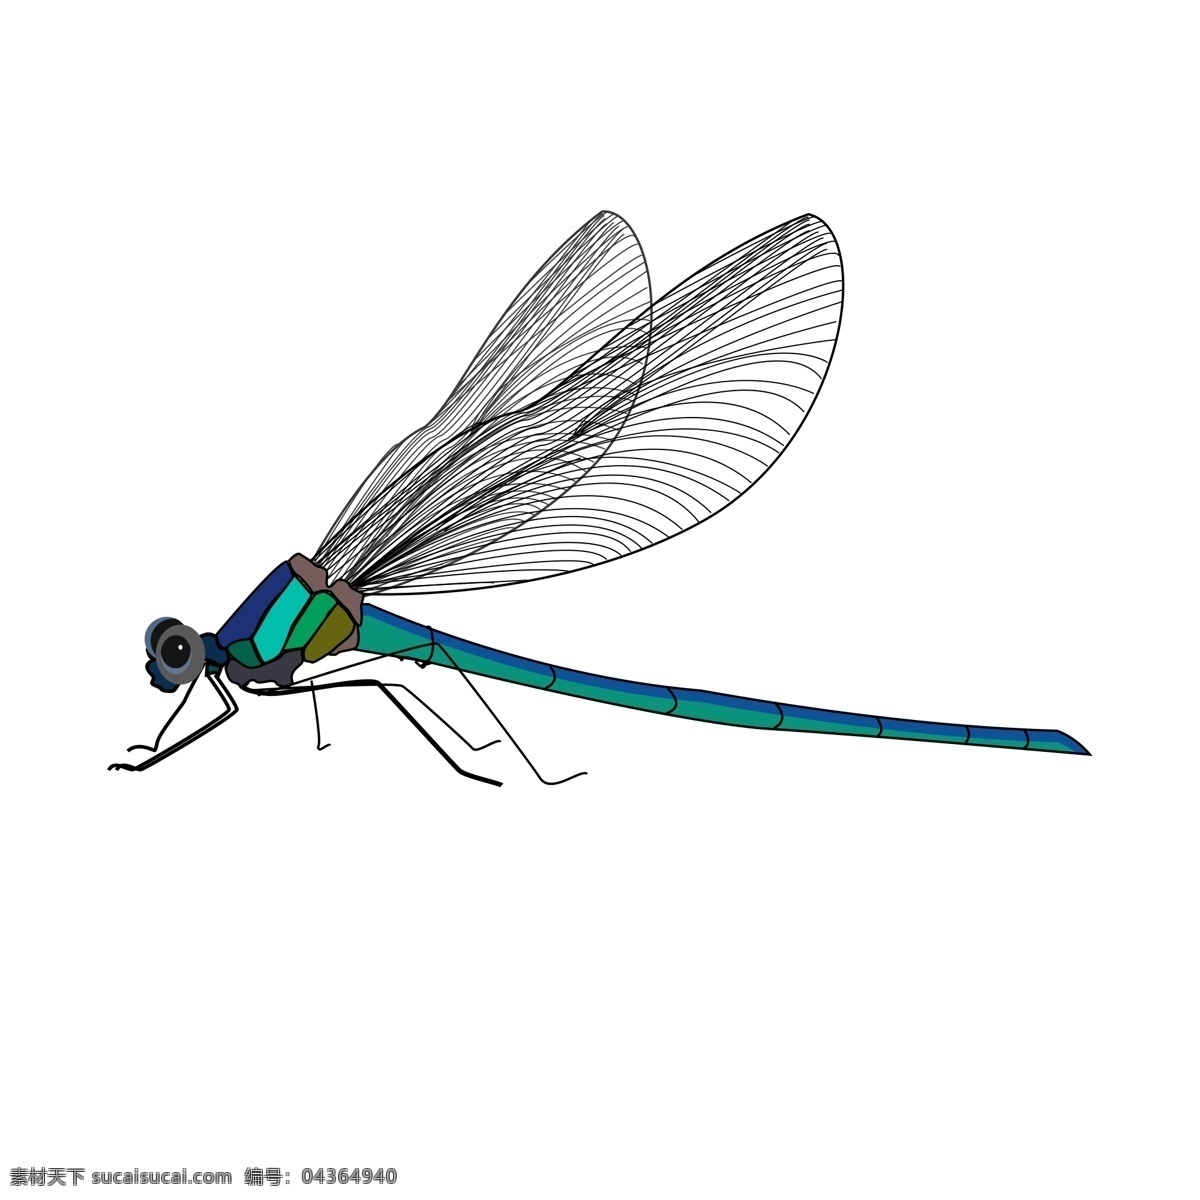 简约 创意 手绘 风 动物 昆虫 蜻蜓 商用 元素 配图 翅膀